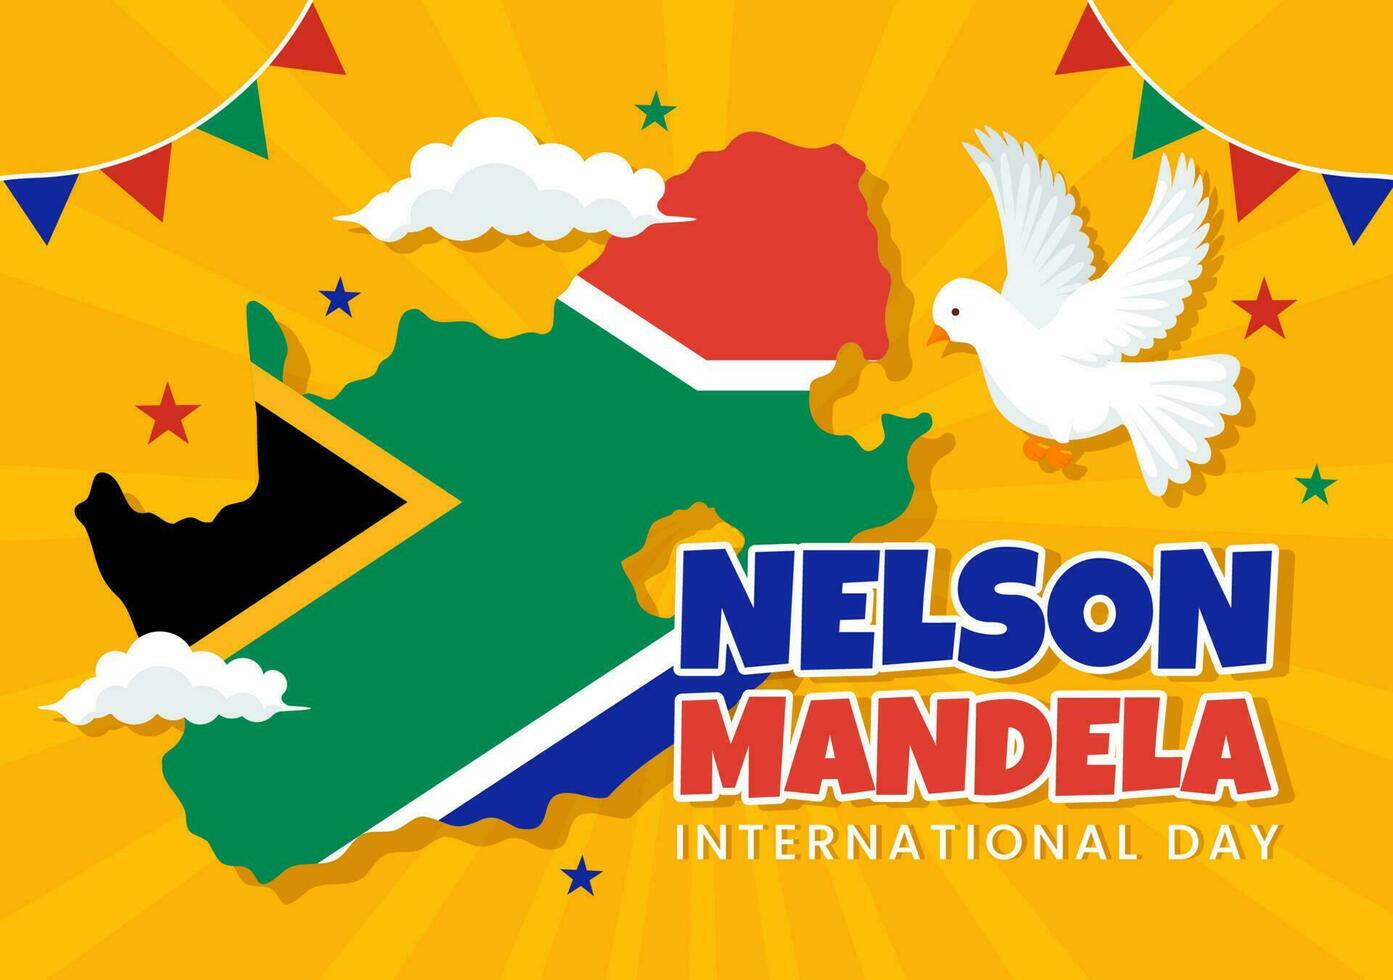 contento Nelson mandela internazionale giorno vettore illustrazione su 18 luglio con Sud Africa bandiera nel piatto cartone animato mano disegnato atterraggio pagina modelli